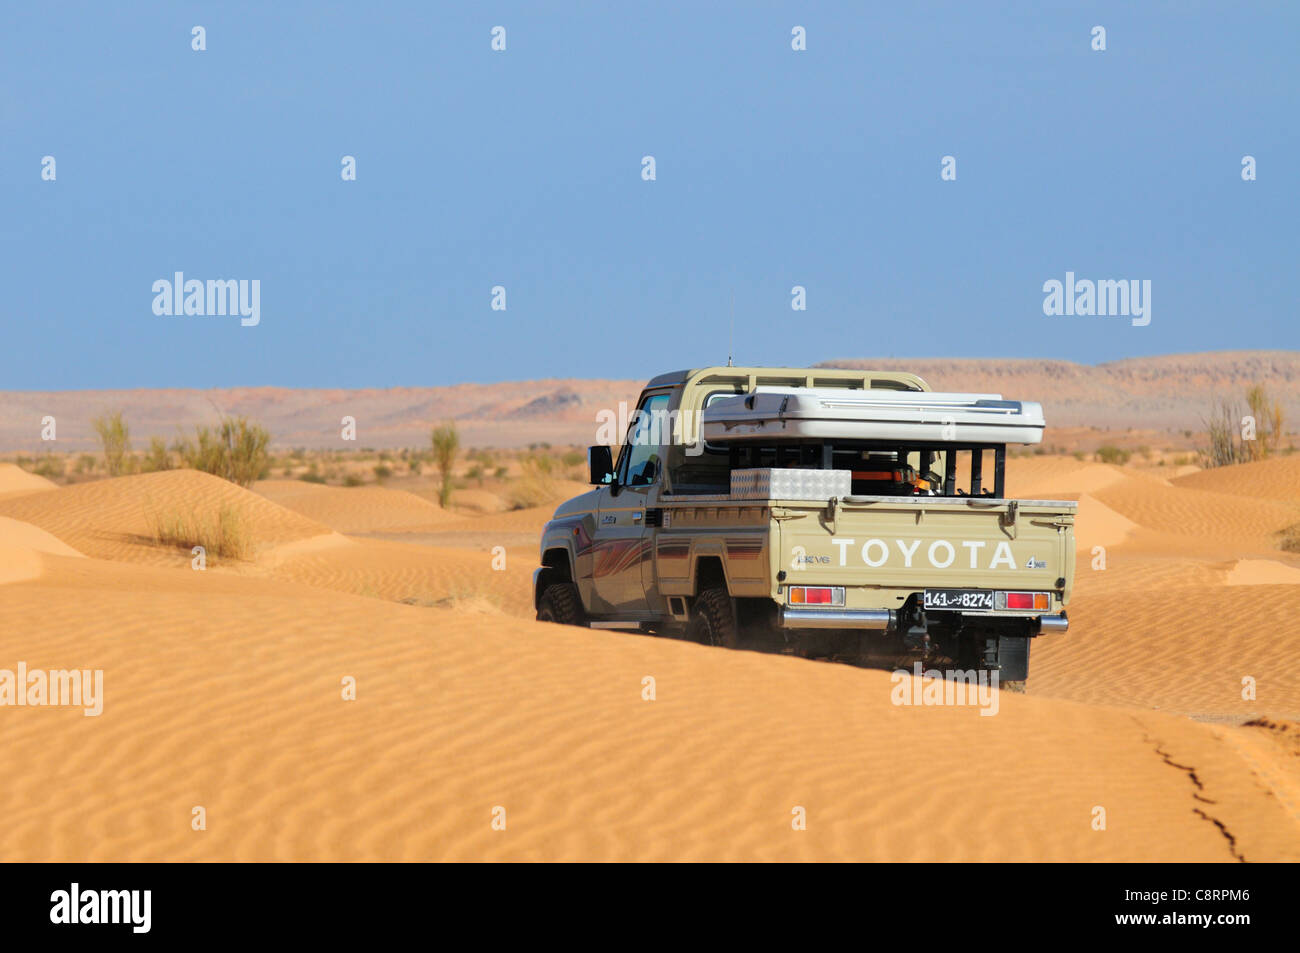 Afrika, Tunesien, nr. Tembaine. Toyota Land Cruiser abholen. Stockfoto